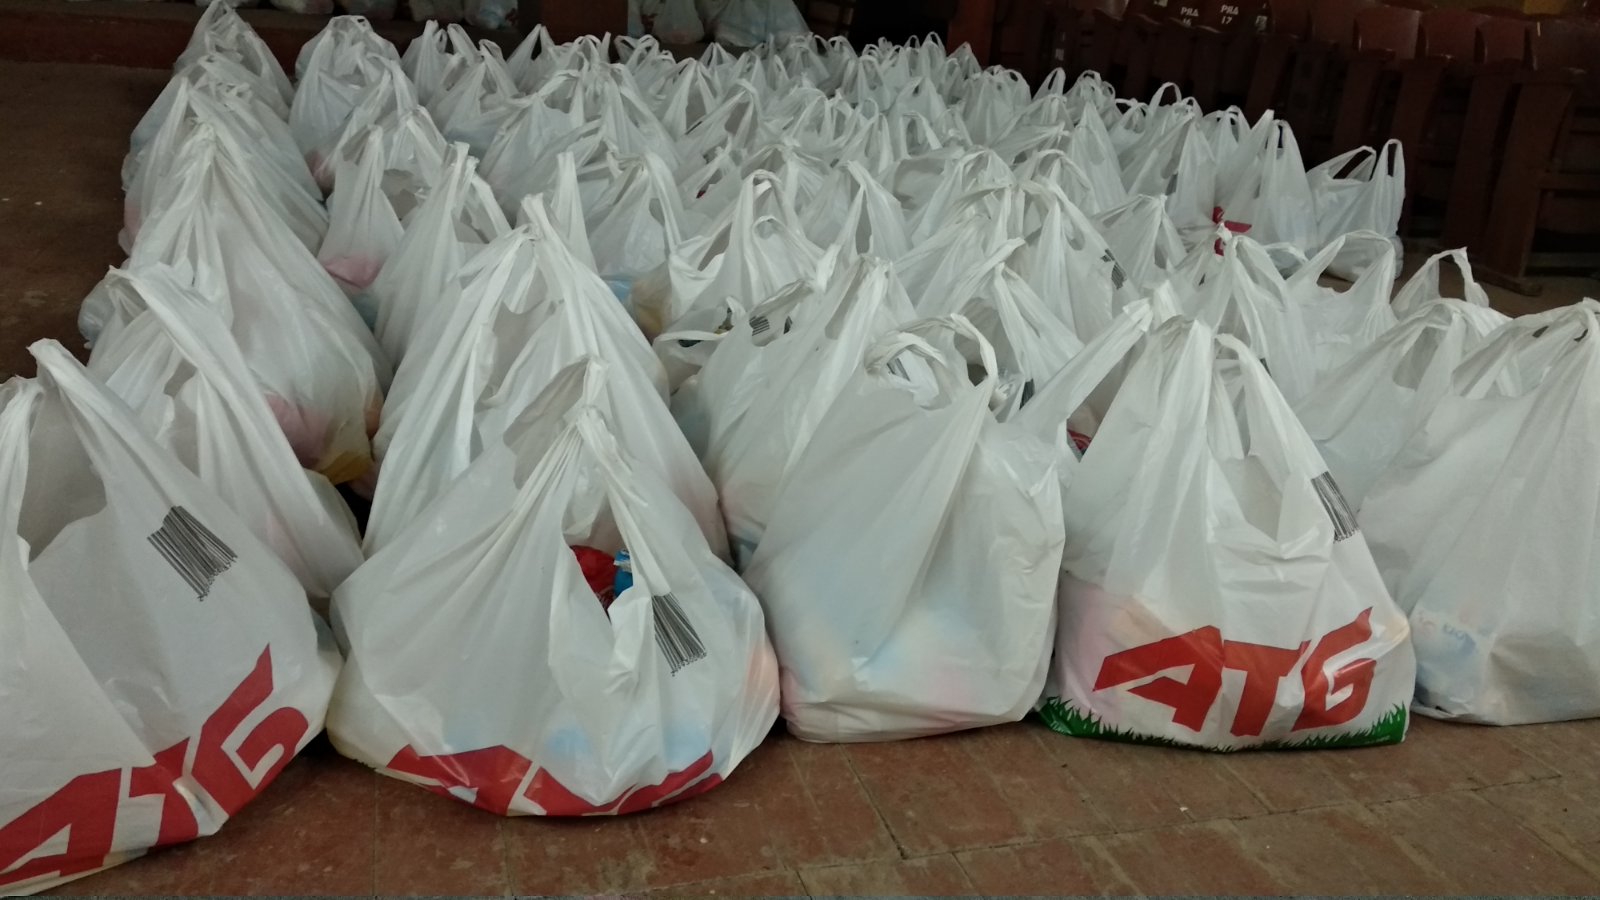 Благотворительная акция "Благо Дарю" в Килии вступила в реализацию - люди получают соцпомощь от горсовета и спонсоров